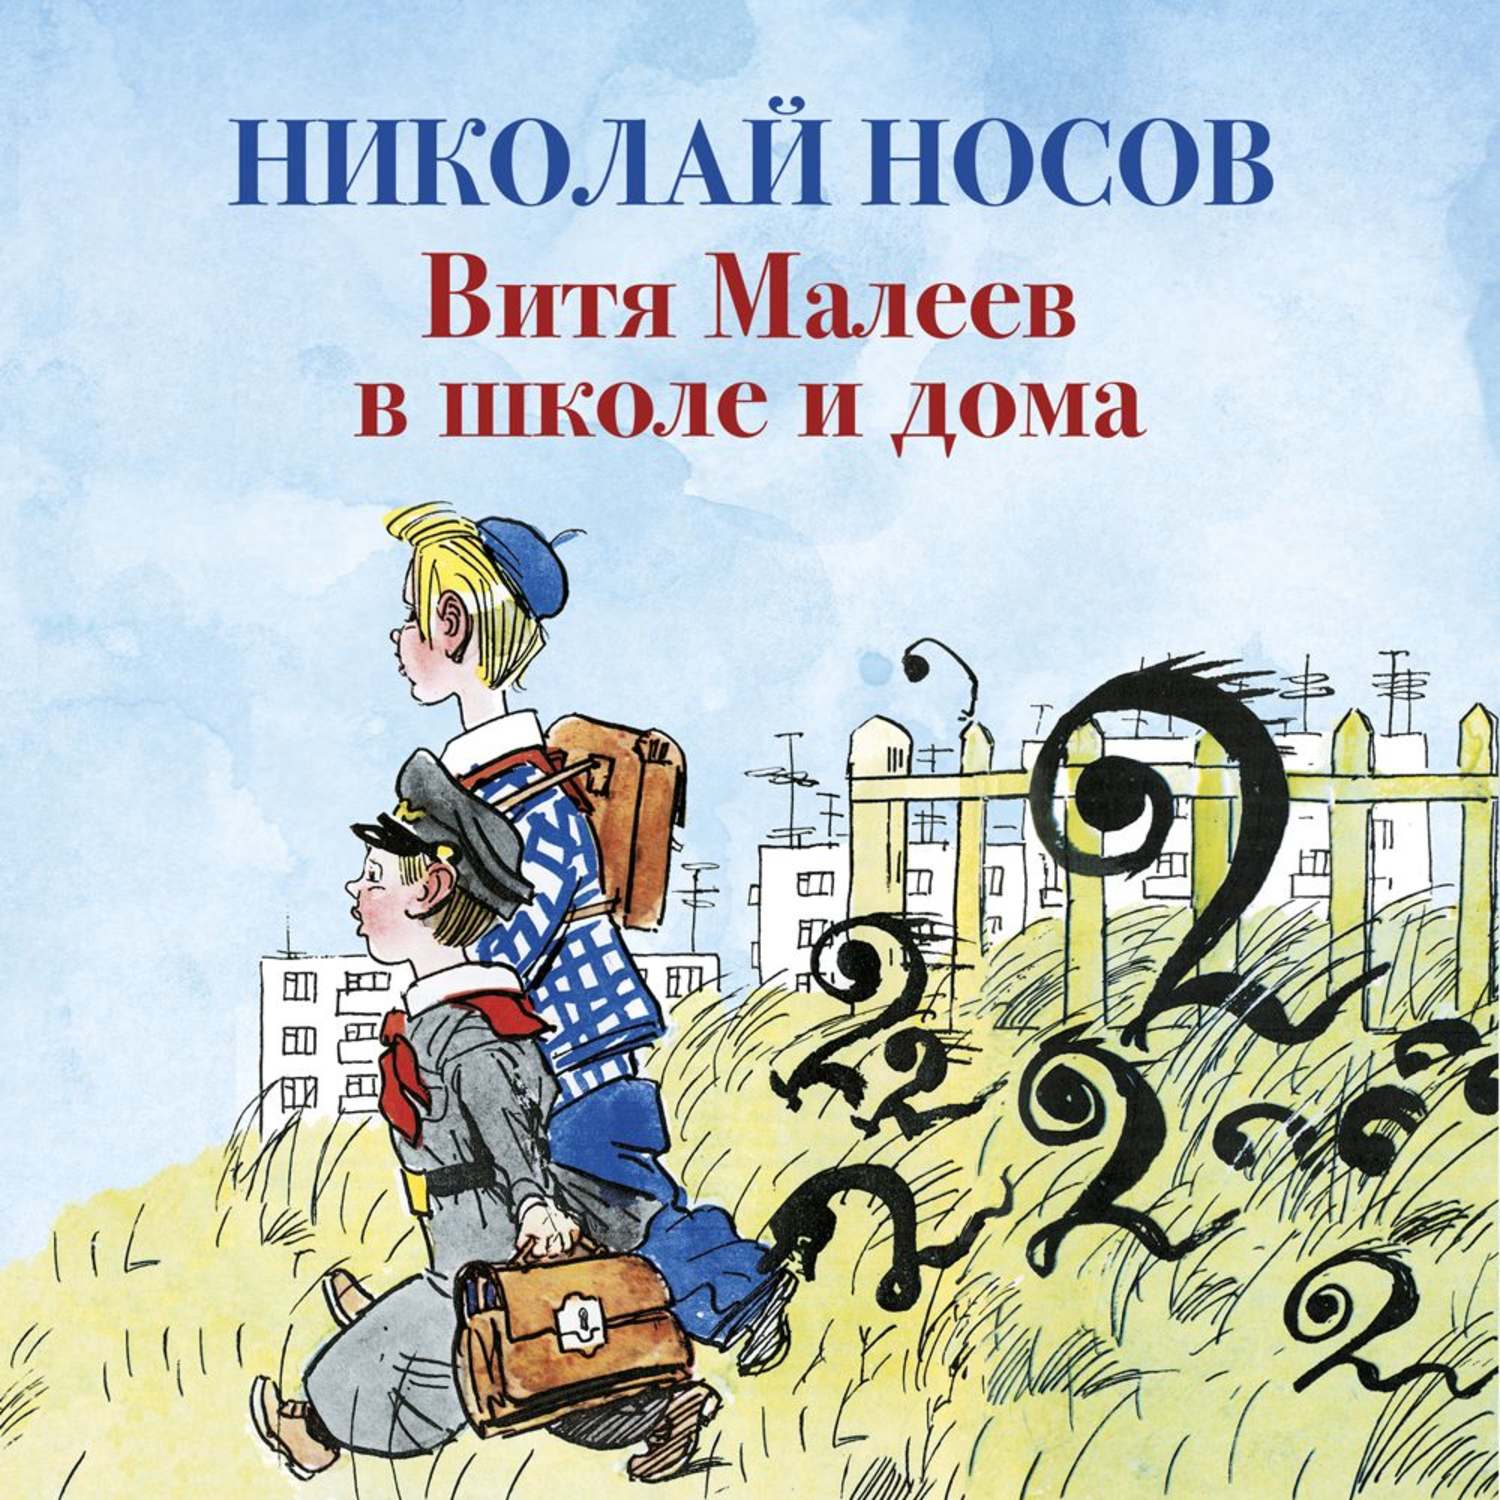 Сказка в школе и дома слушать. Н. Н. Носов Витя Малеев в школе.